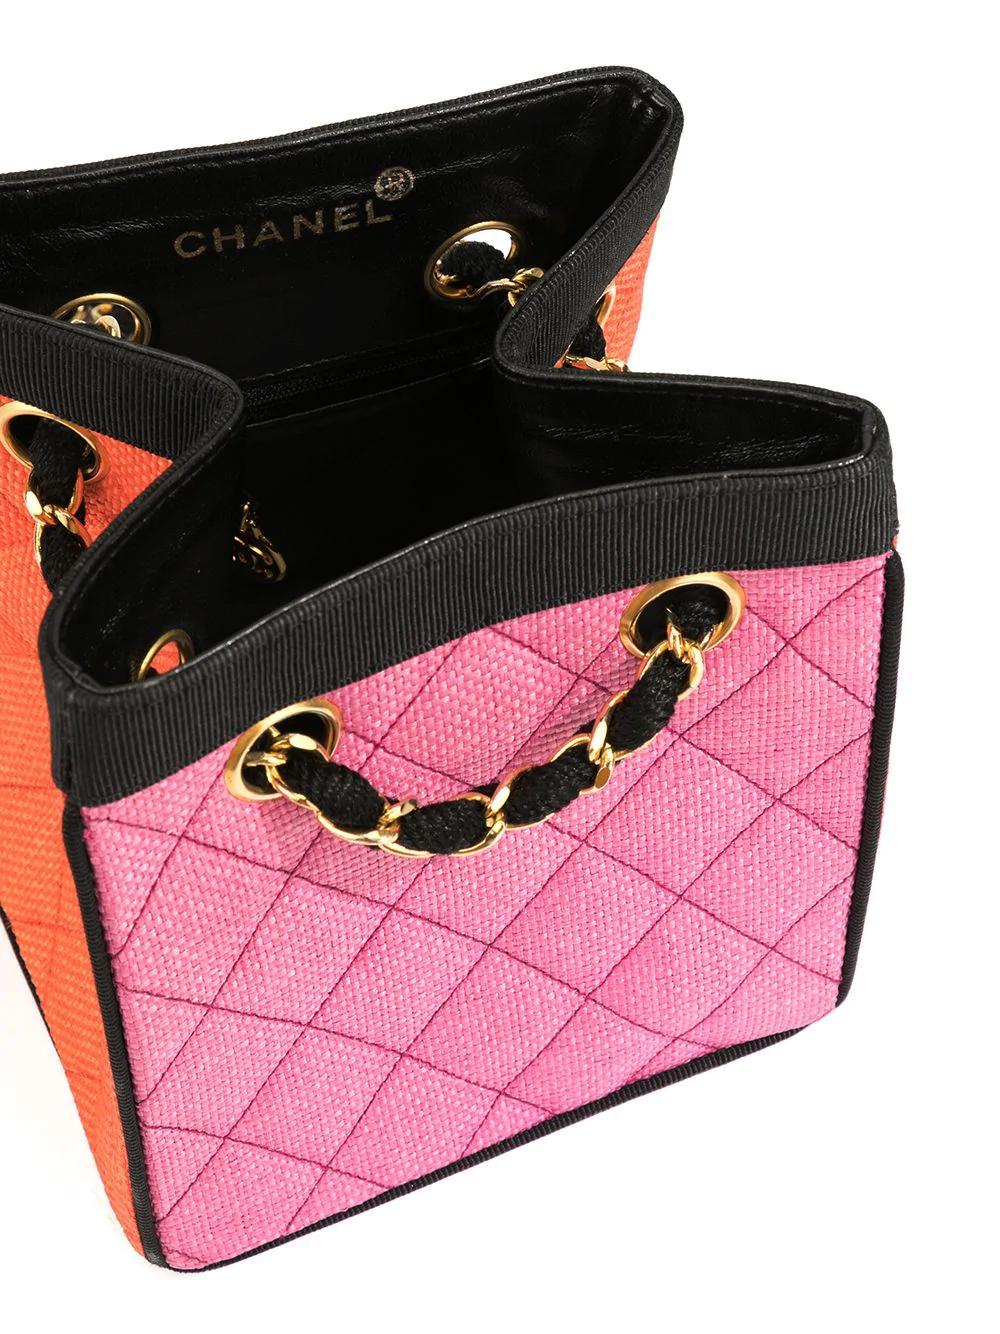 Women's Chanel 1991 Multicolor Mini Vintage Tote Bag Rare Pink Orange Black Straw Tote For Sale